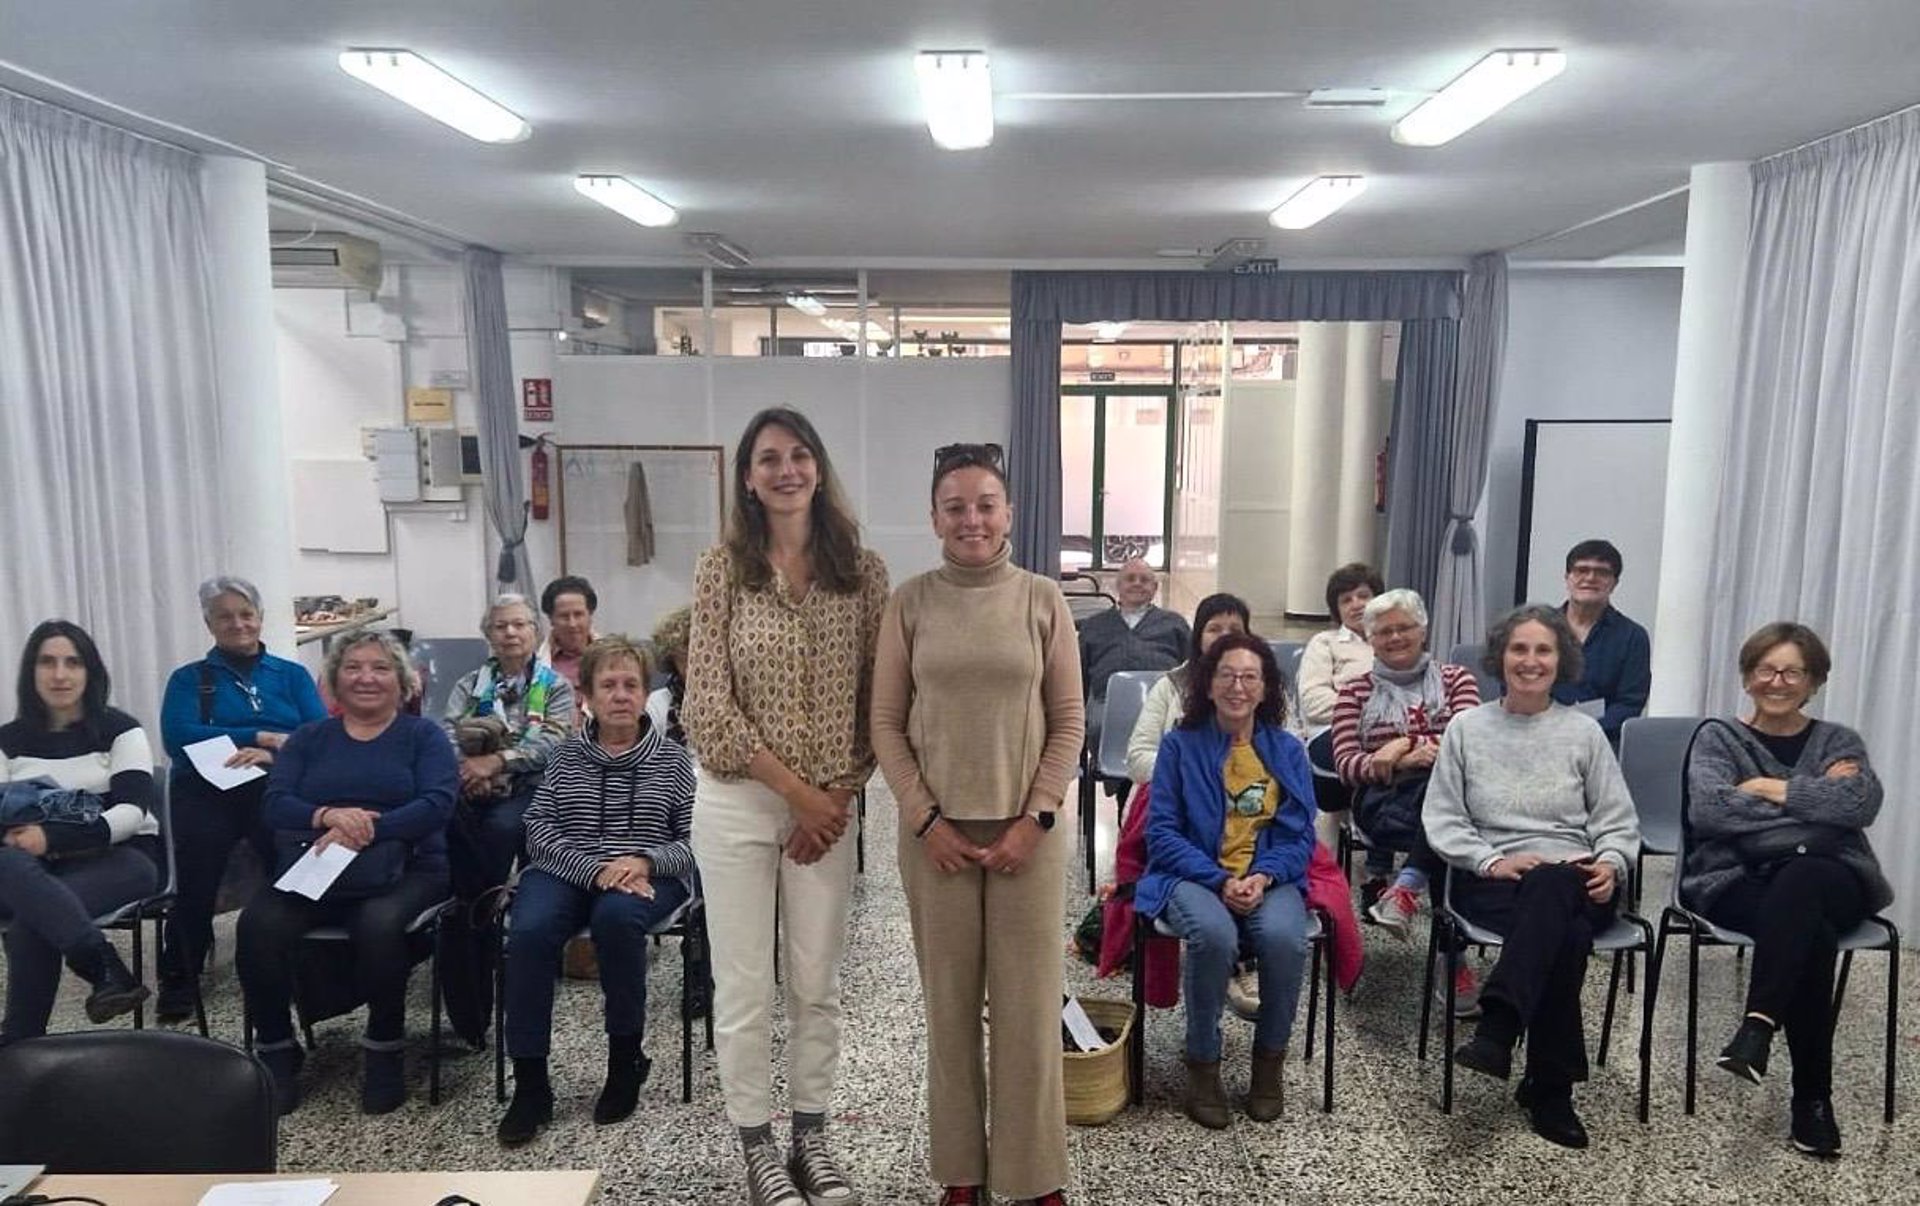 El Consell de Mallorca impulsa las actividades para personas mayores en centros socioculturales - CONSELL DE MALLORCA